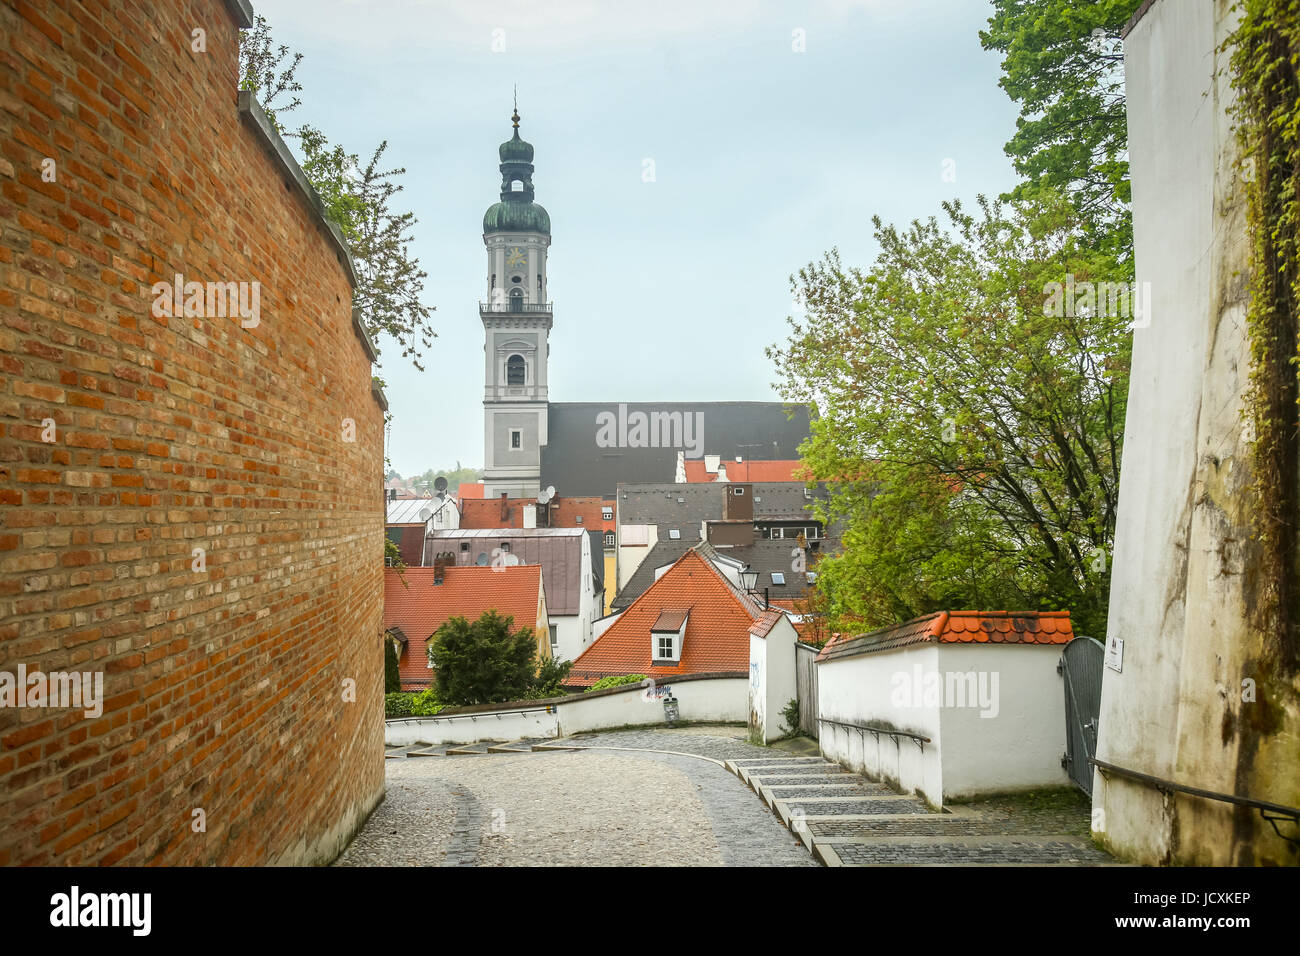 FREISING, Germania - 8 Maggio 2017 : una vista di St Georges campanile della chiesa sopra i tetti della città a Freising, Germania. Foto Stock